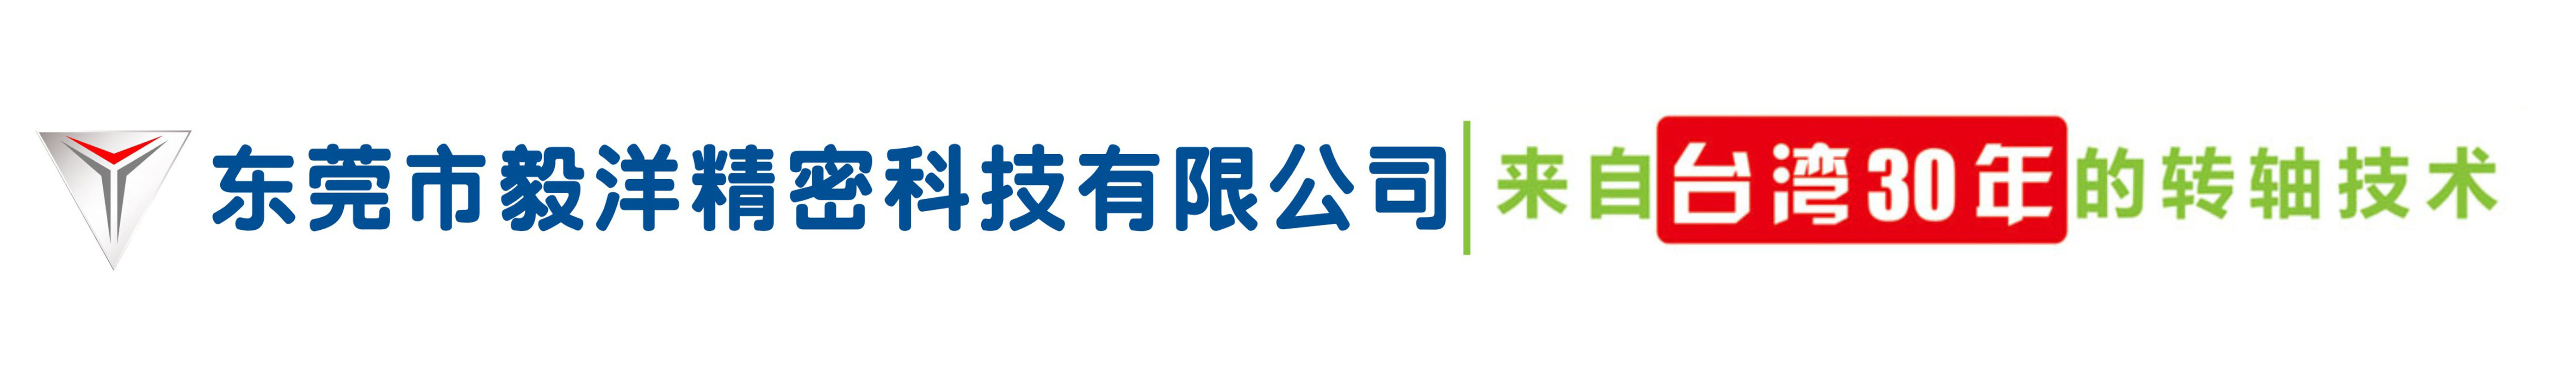 Dongguan Hardware Co., Ltd.